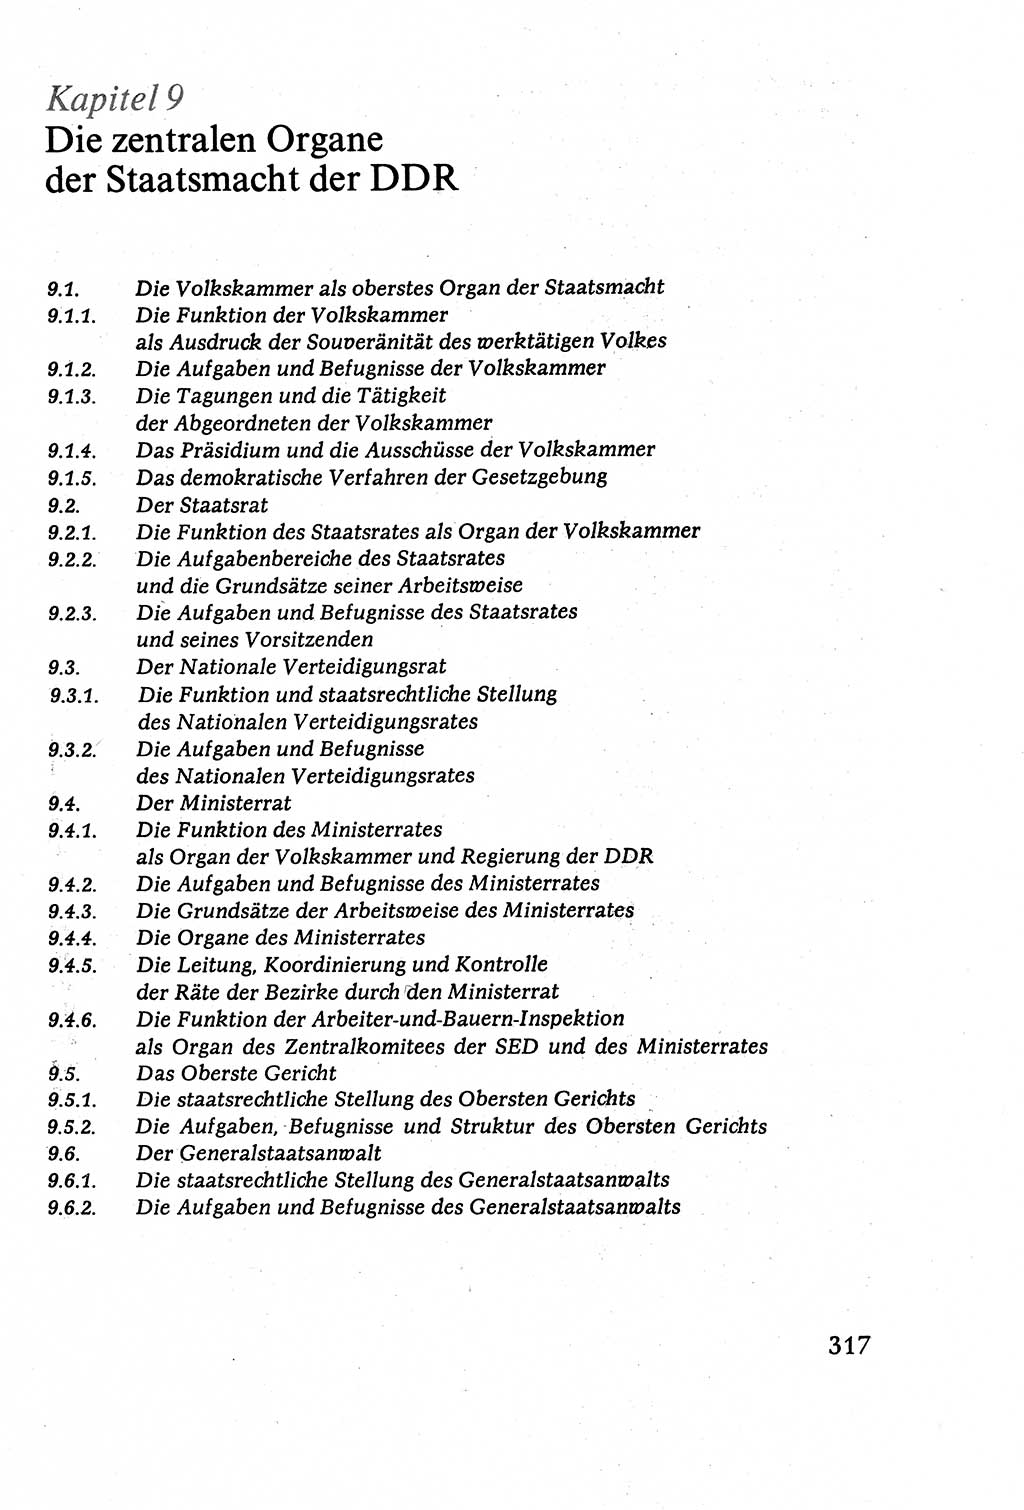 Staatsrecht der DDR (Deutsche Demokratische Republik), Lehrbuch 1977, Seite 317 (St.-R. DDR Lb. 1977, S. 317)